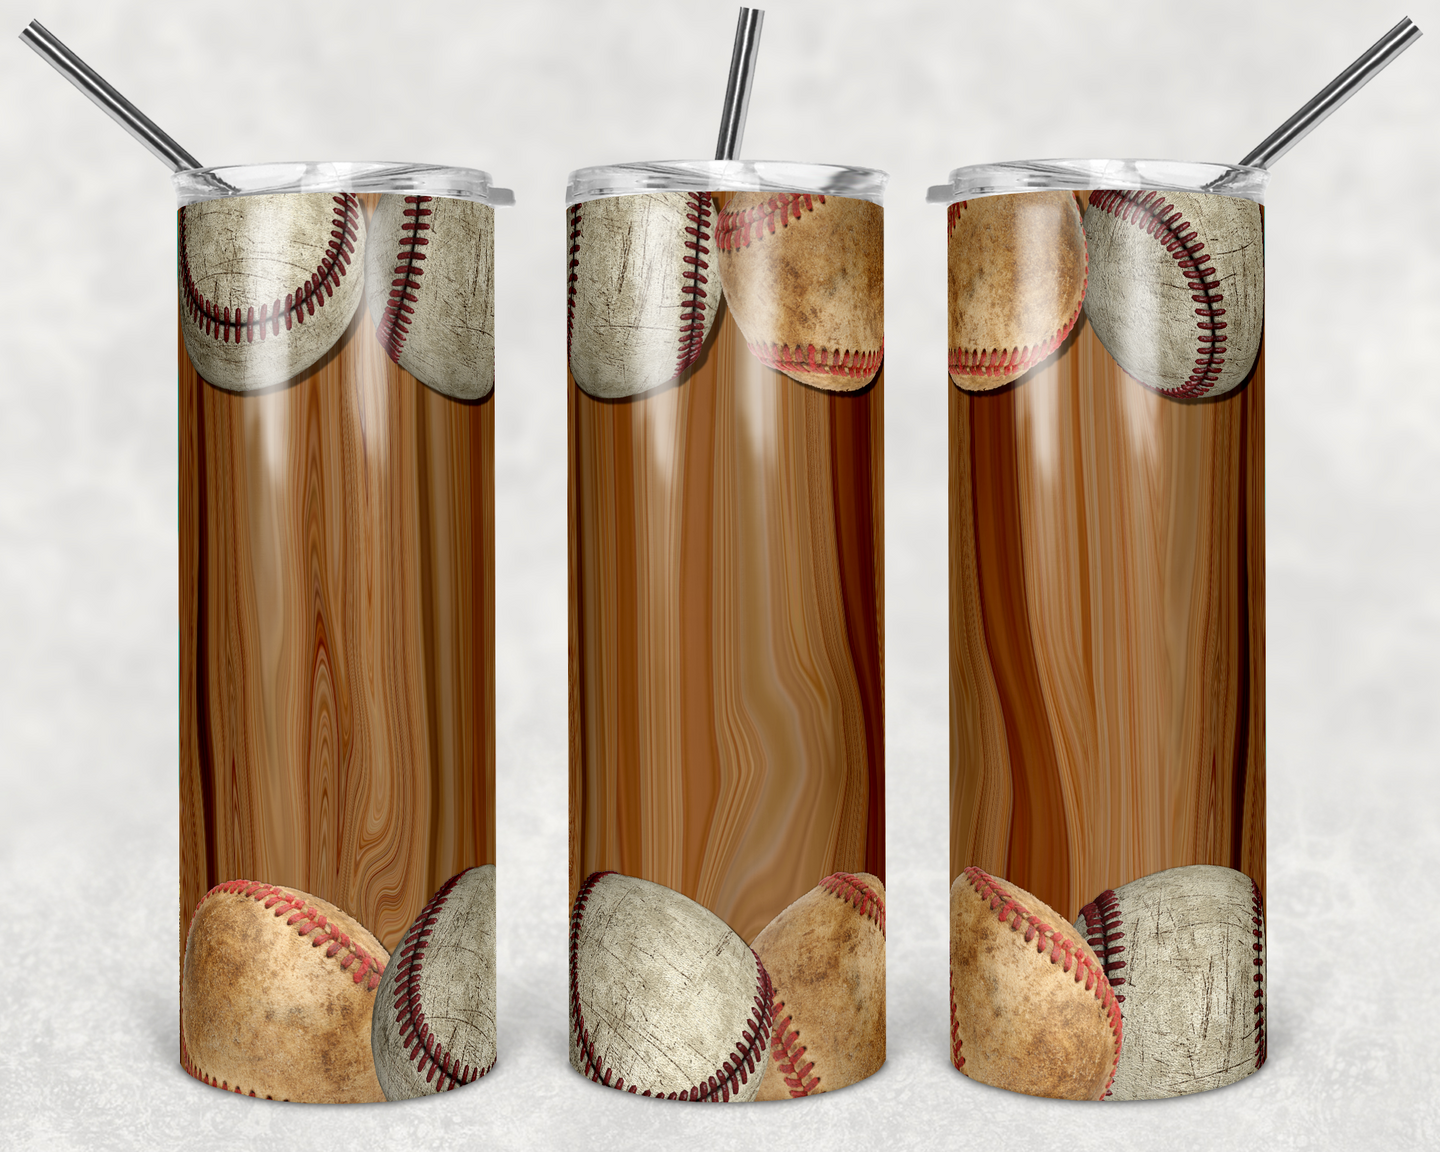 Baseballs on Light Wood Grain